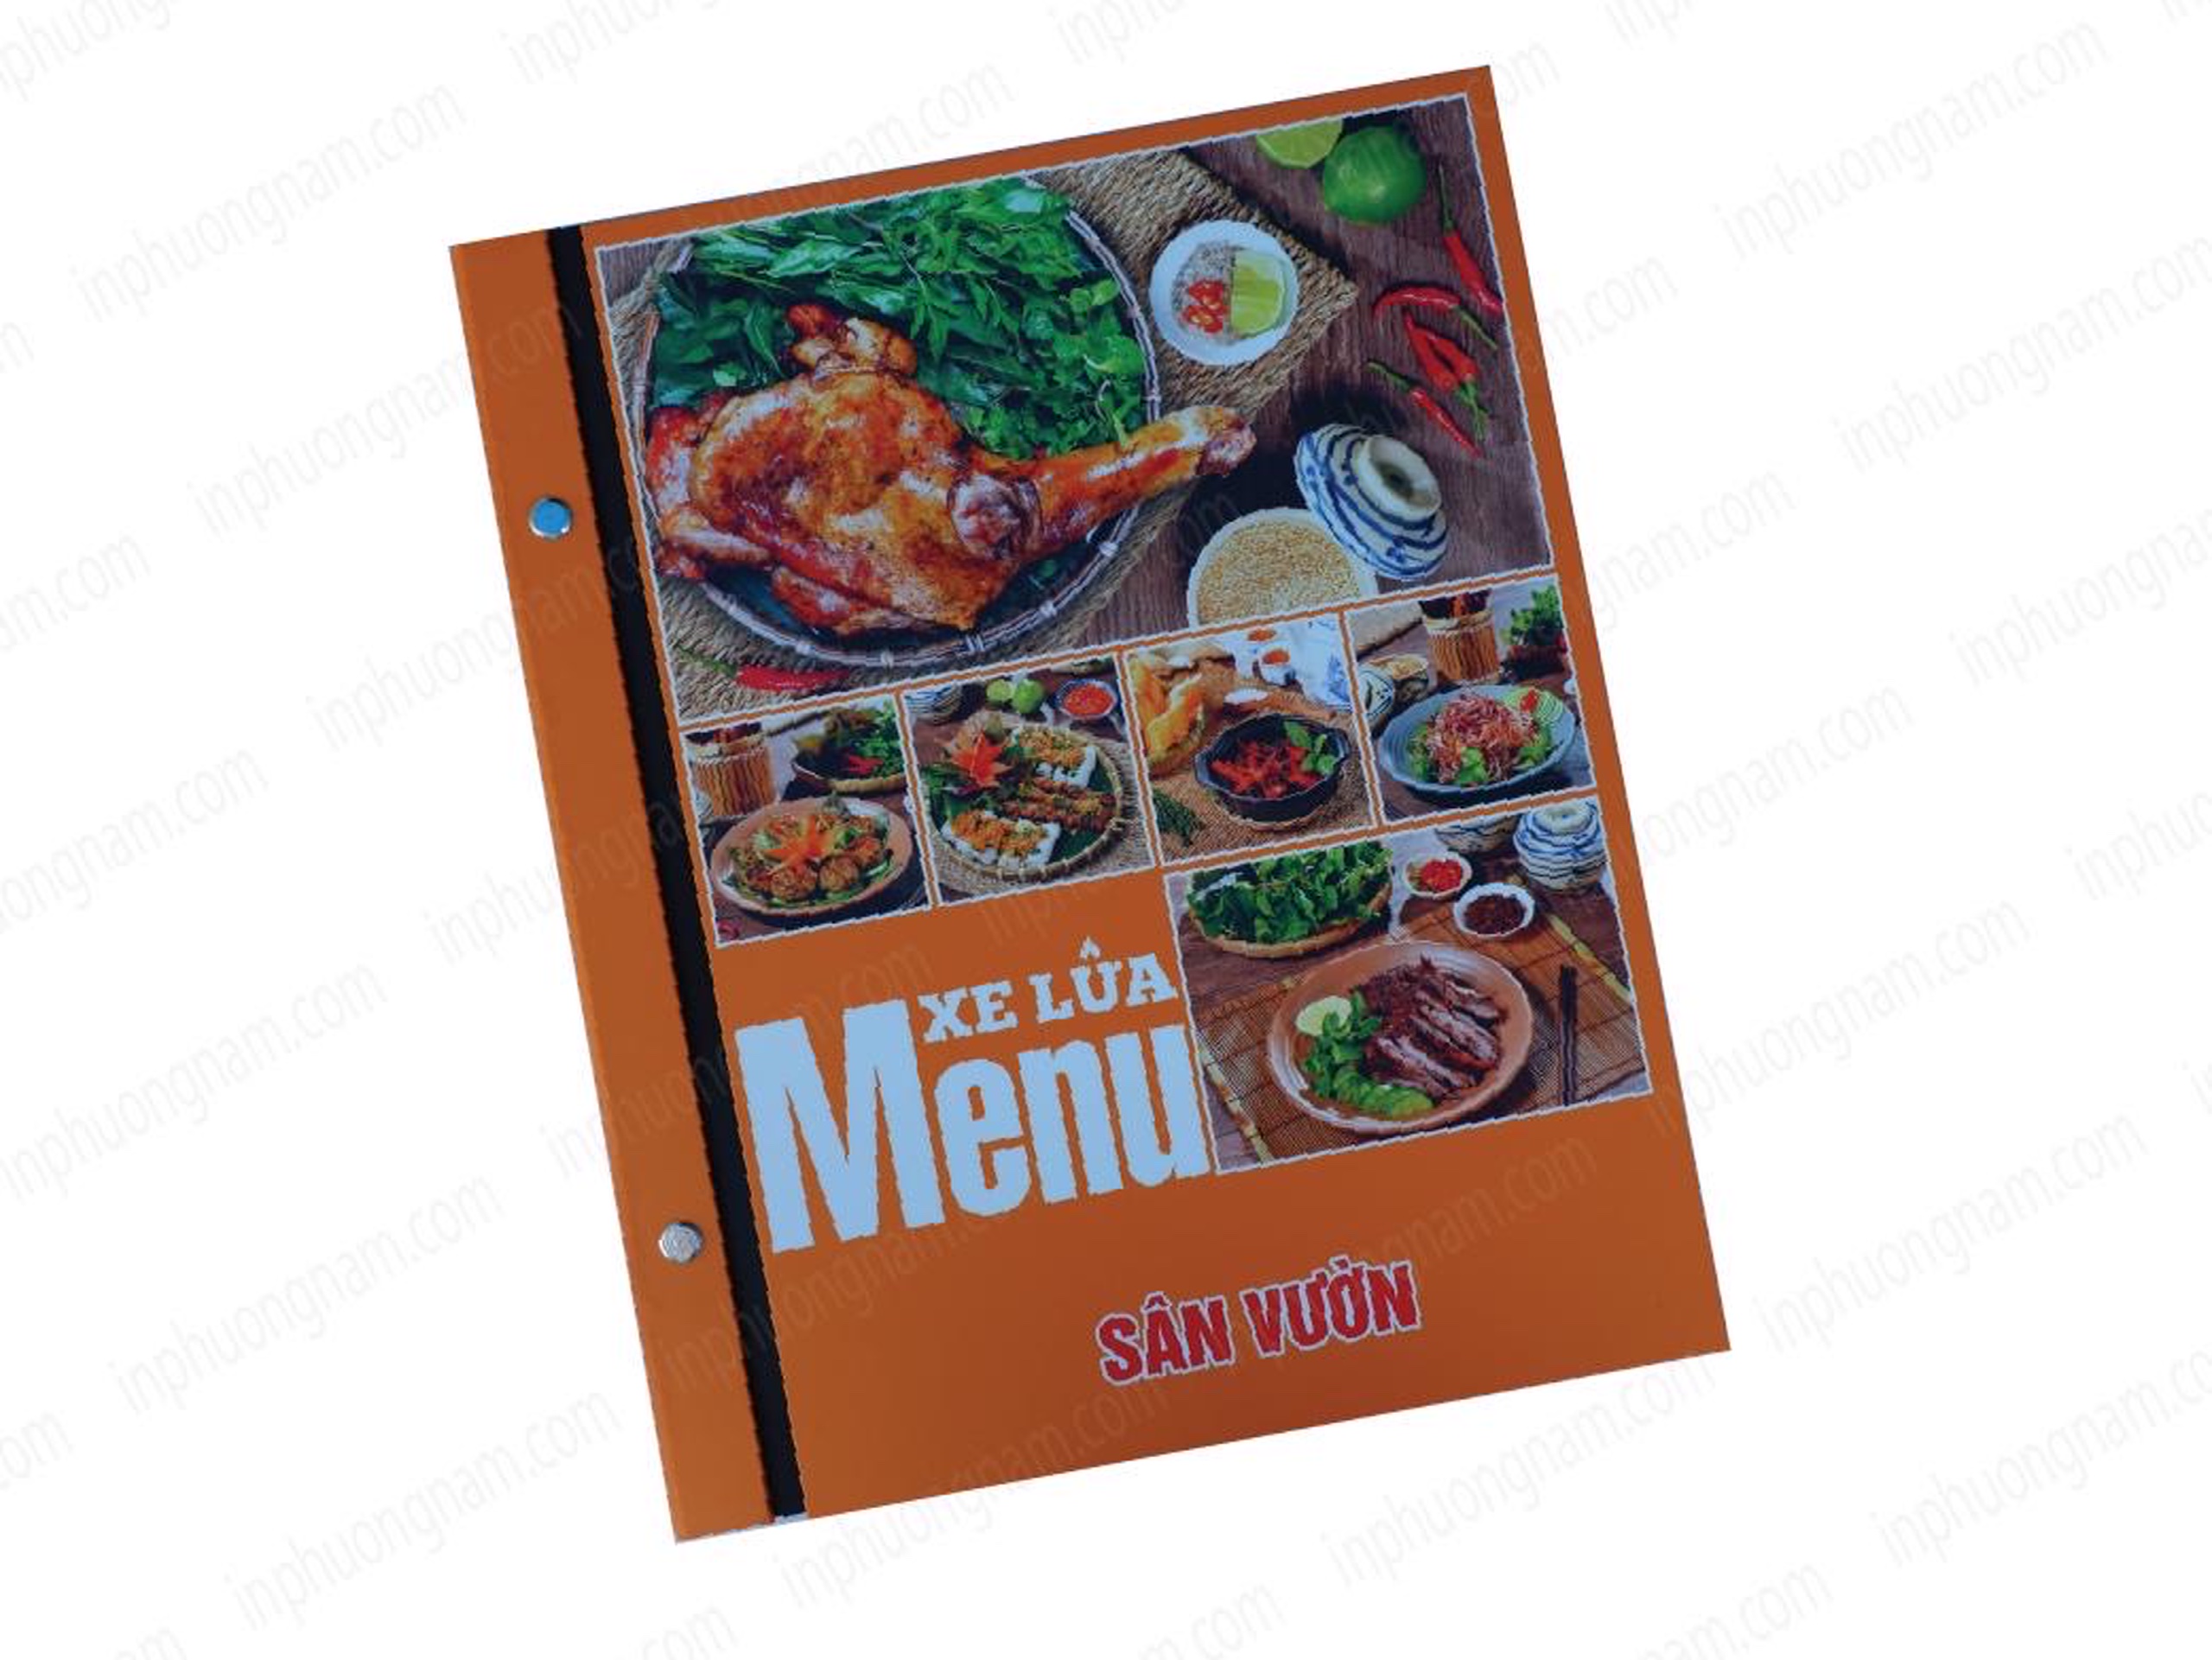 Bạn có đang tìm kiếm các mẫu menu đẹp cho nhà hàng của mình không?